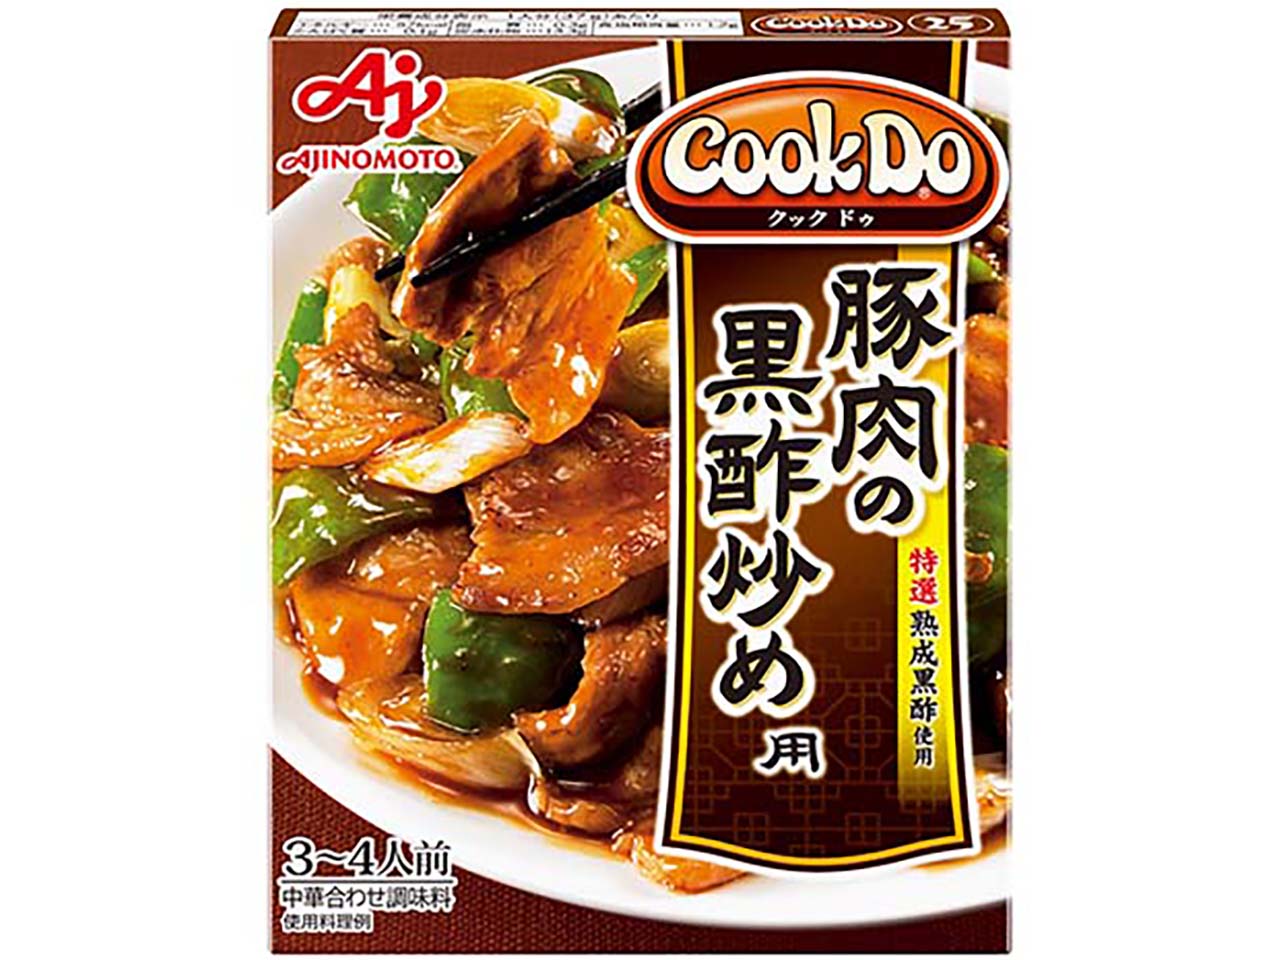 「Cook Do」豚肉の黒酢炒め用